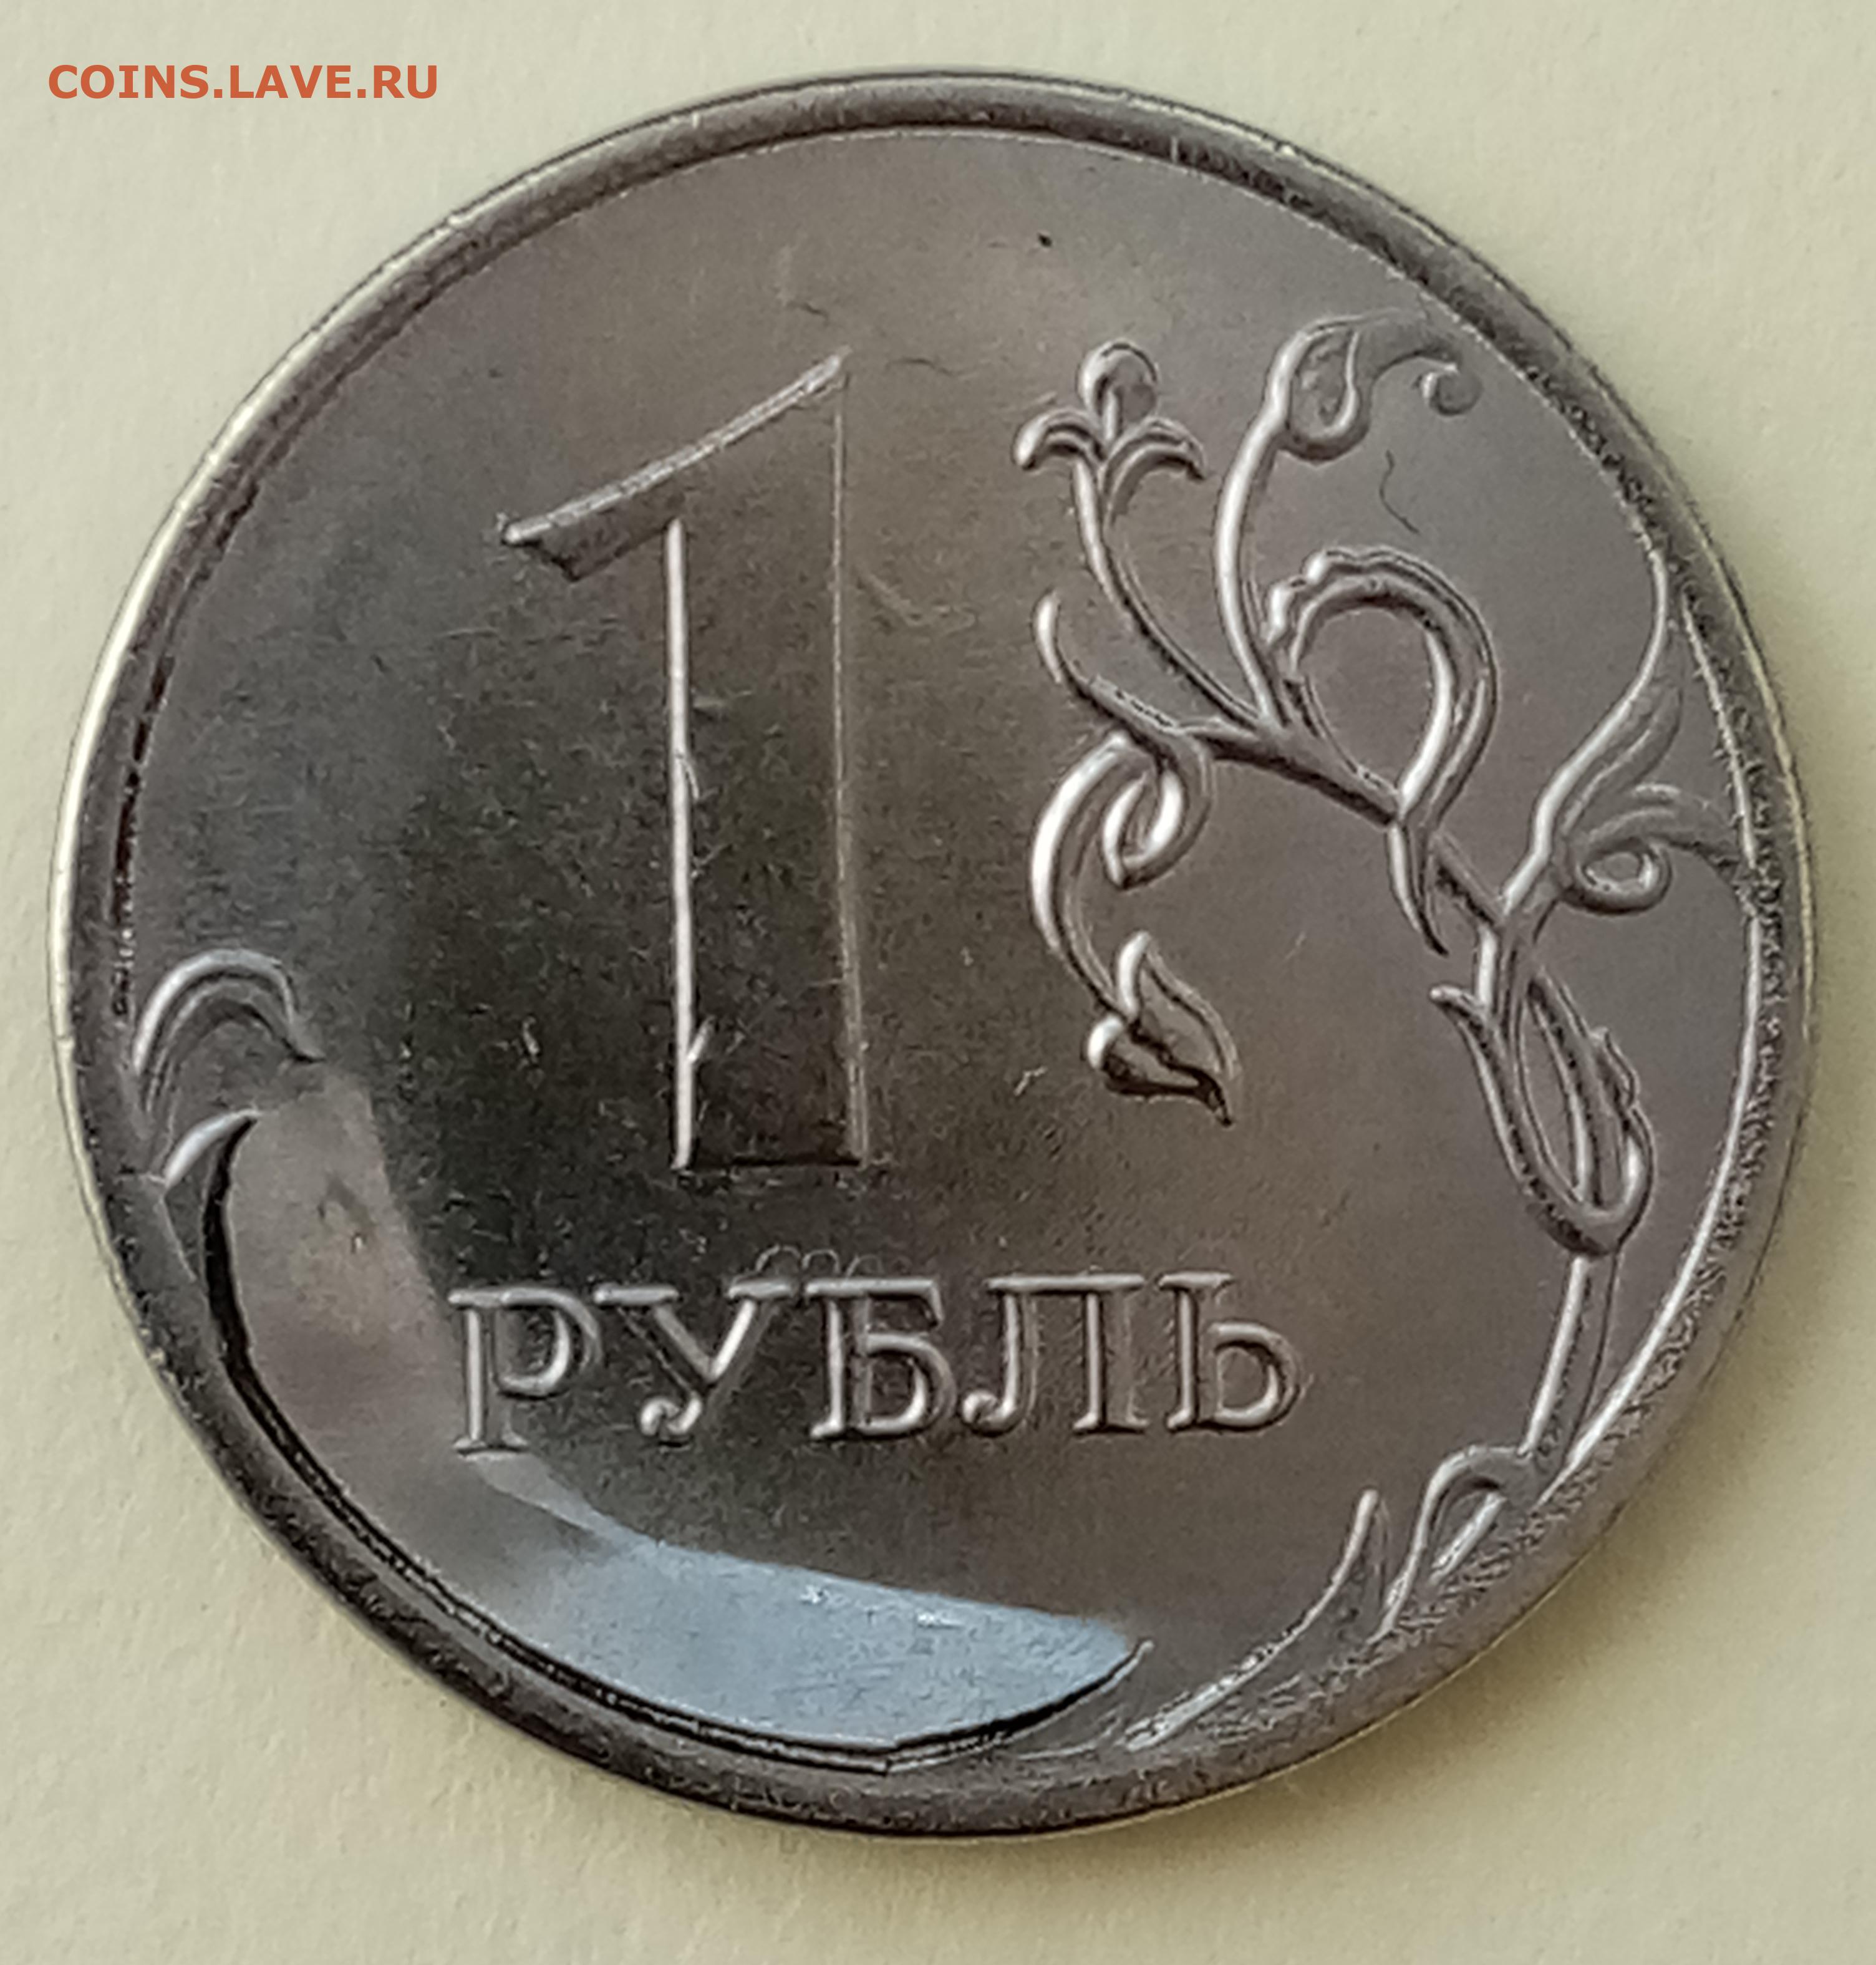 5 руб 2020 г. Брак монеты 1 рубль 2020г. Рубль 2020г.. Один рубль 2020. Брак заготовки монеты.